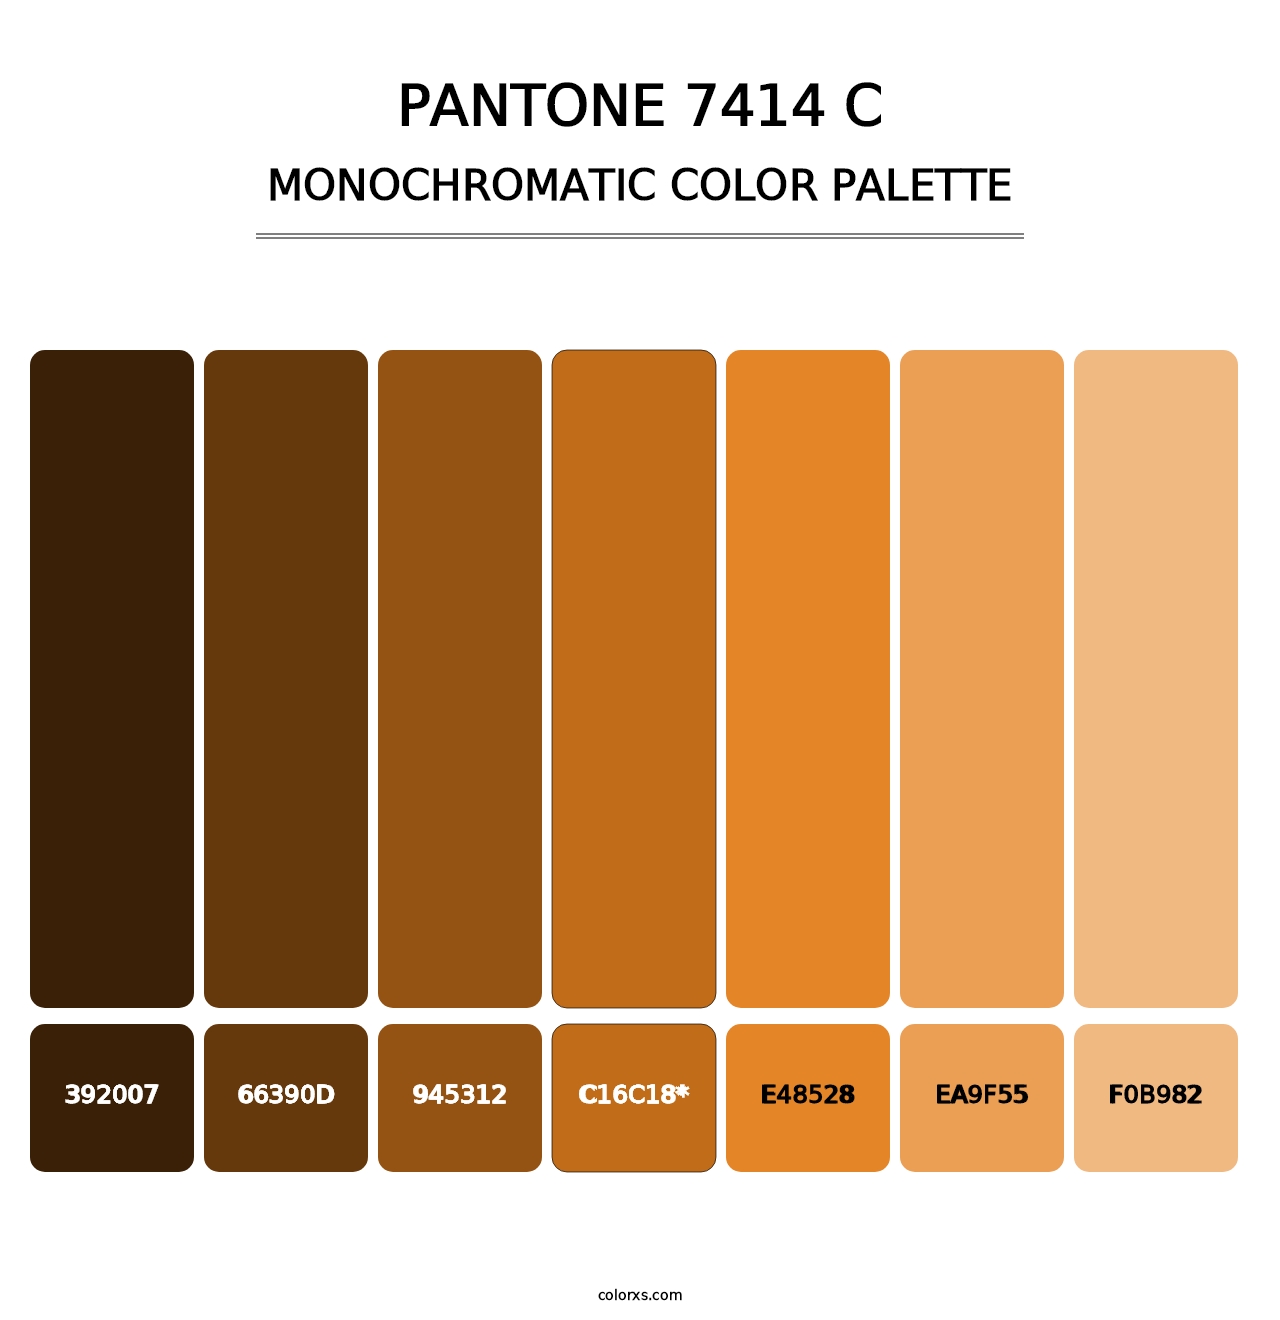 PANTONE 7414 C - Monochromatic Color Palette